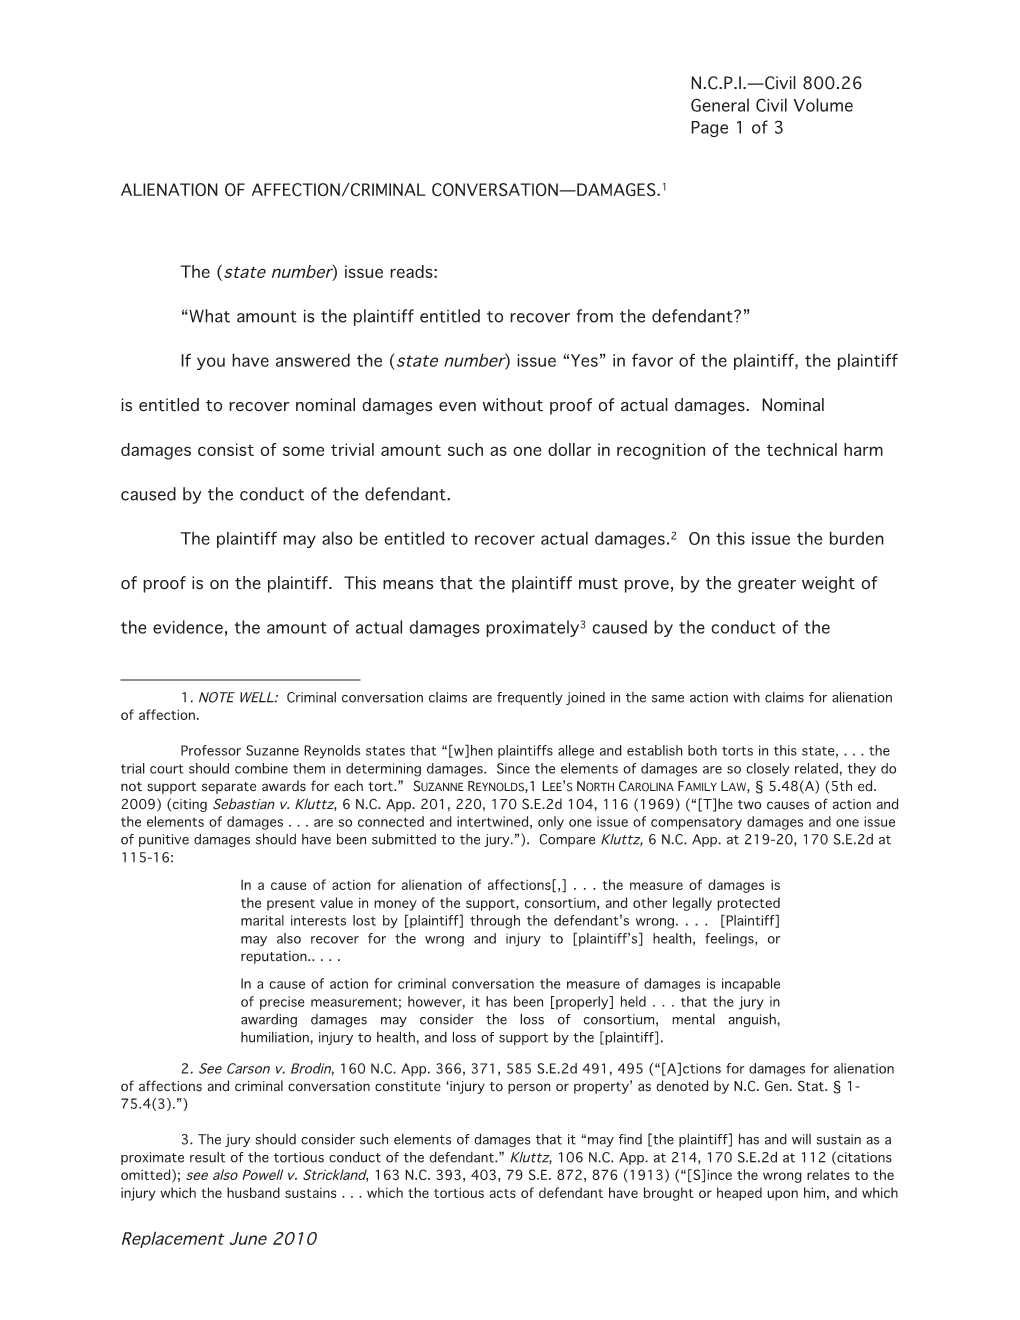 Replacement June 2010 N.C.P.I.—Civil 800.26 General Civil Volume Page 2 of 3